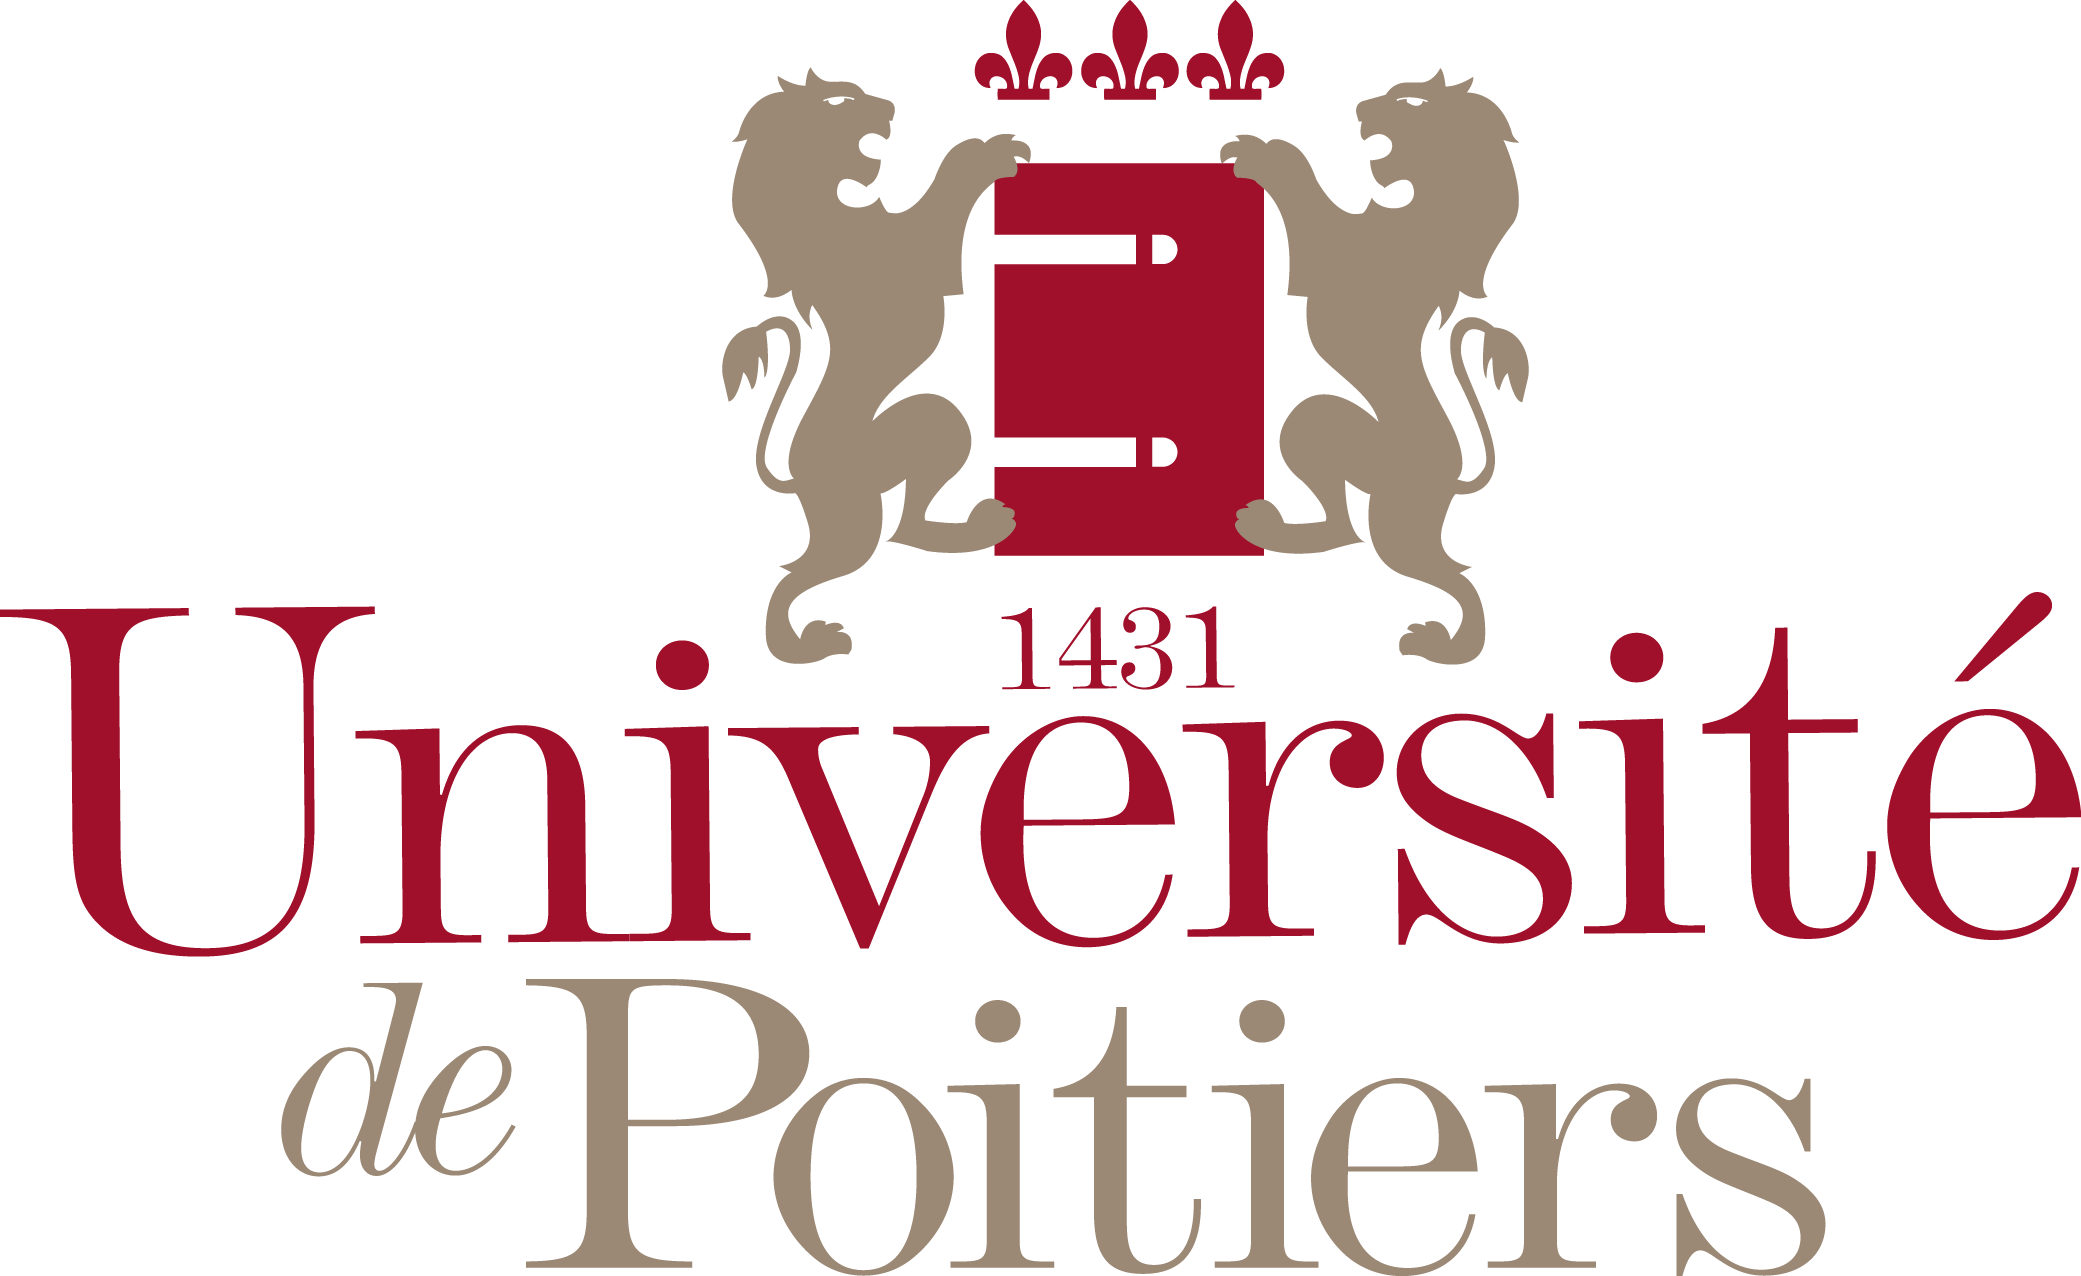 université Poitiers